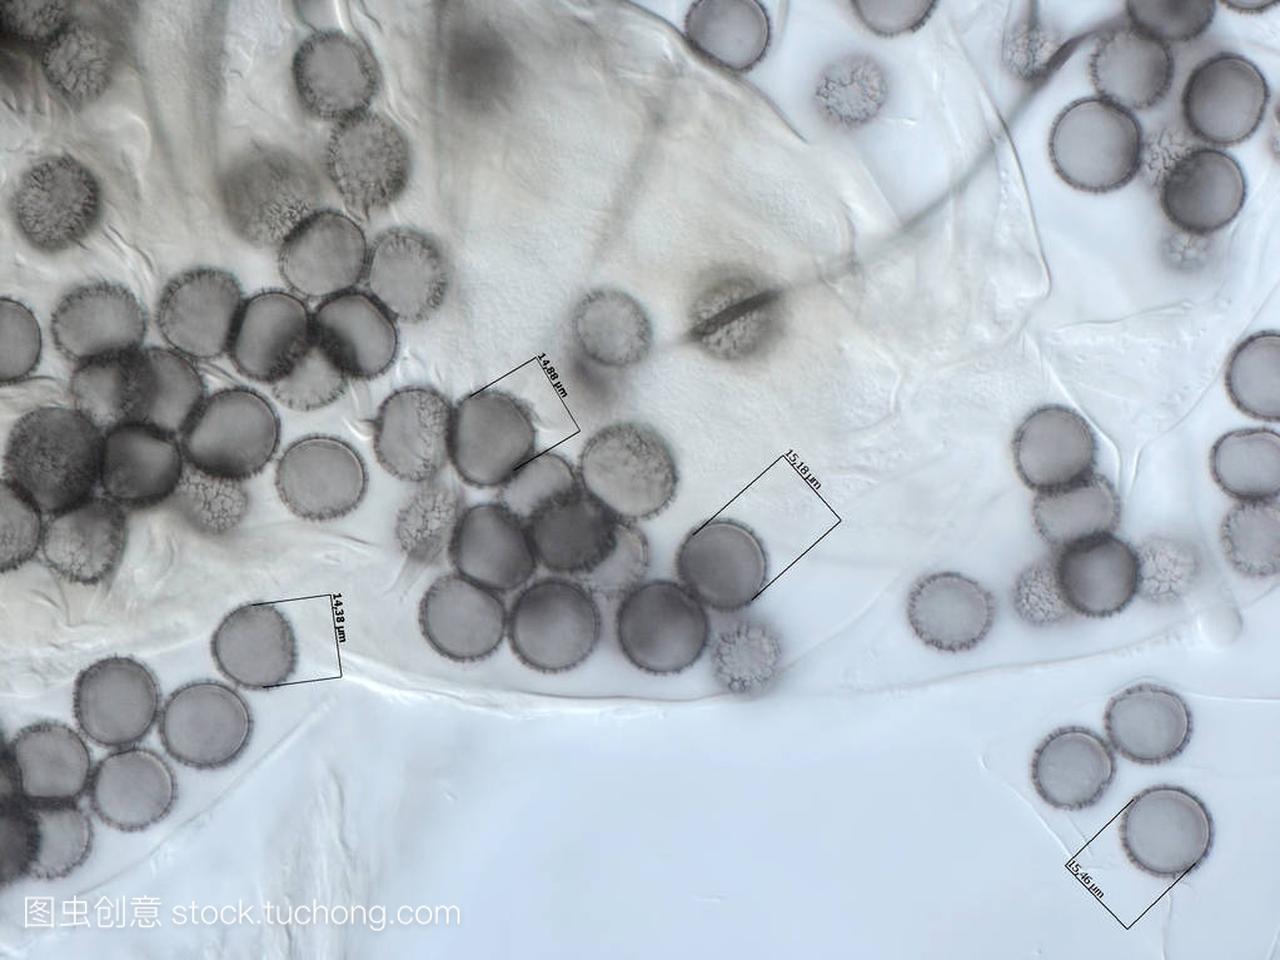 粘液霉菌的孢子。显微镜